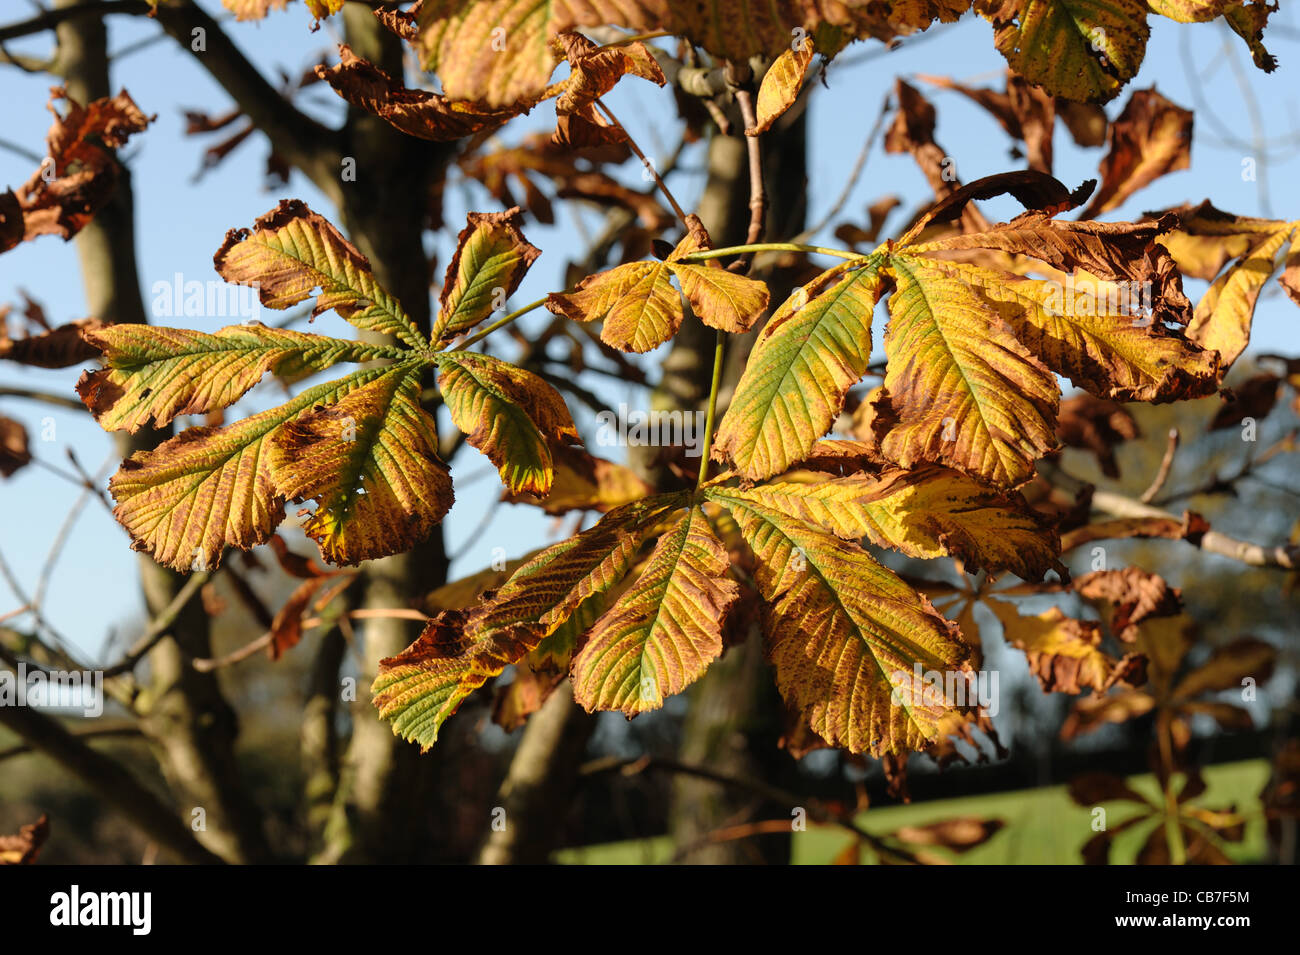 Horse chestnut (Aesculus hippocastanum) leaves in autumn colour Stock Photo